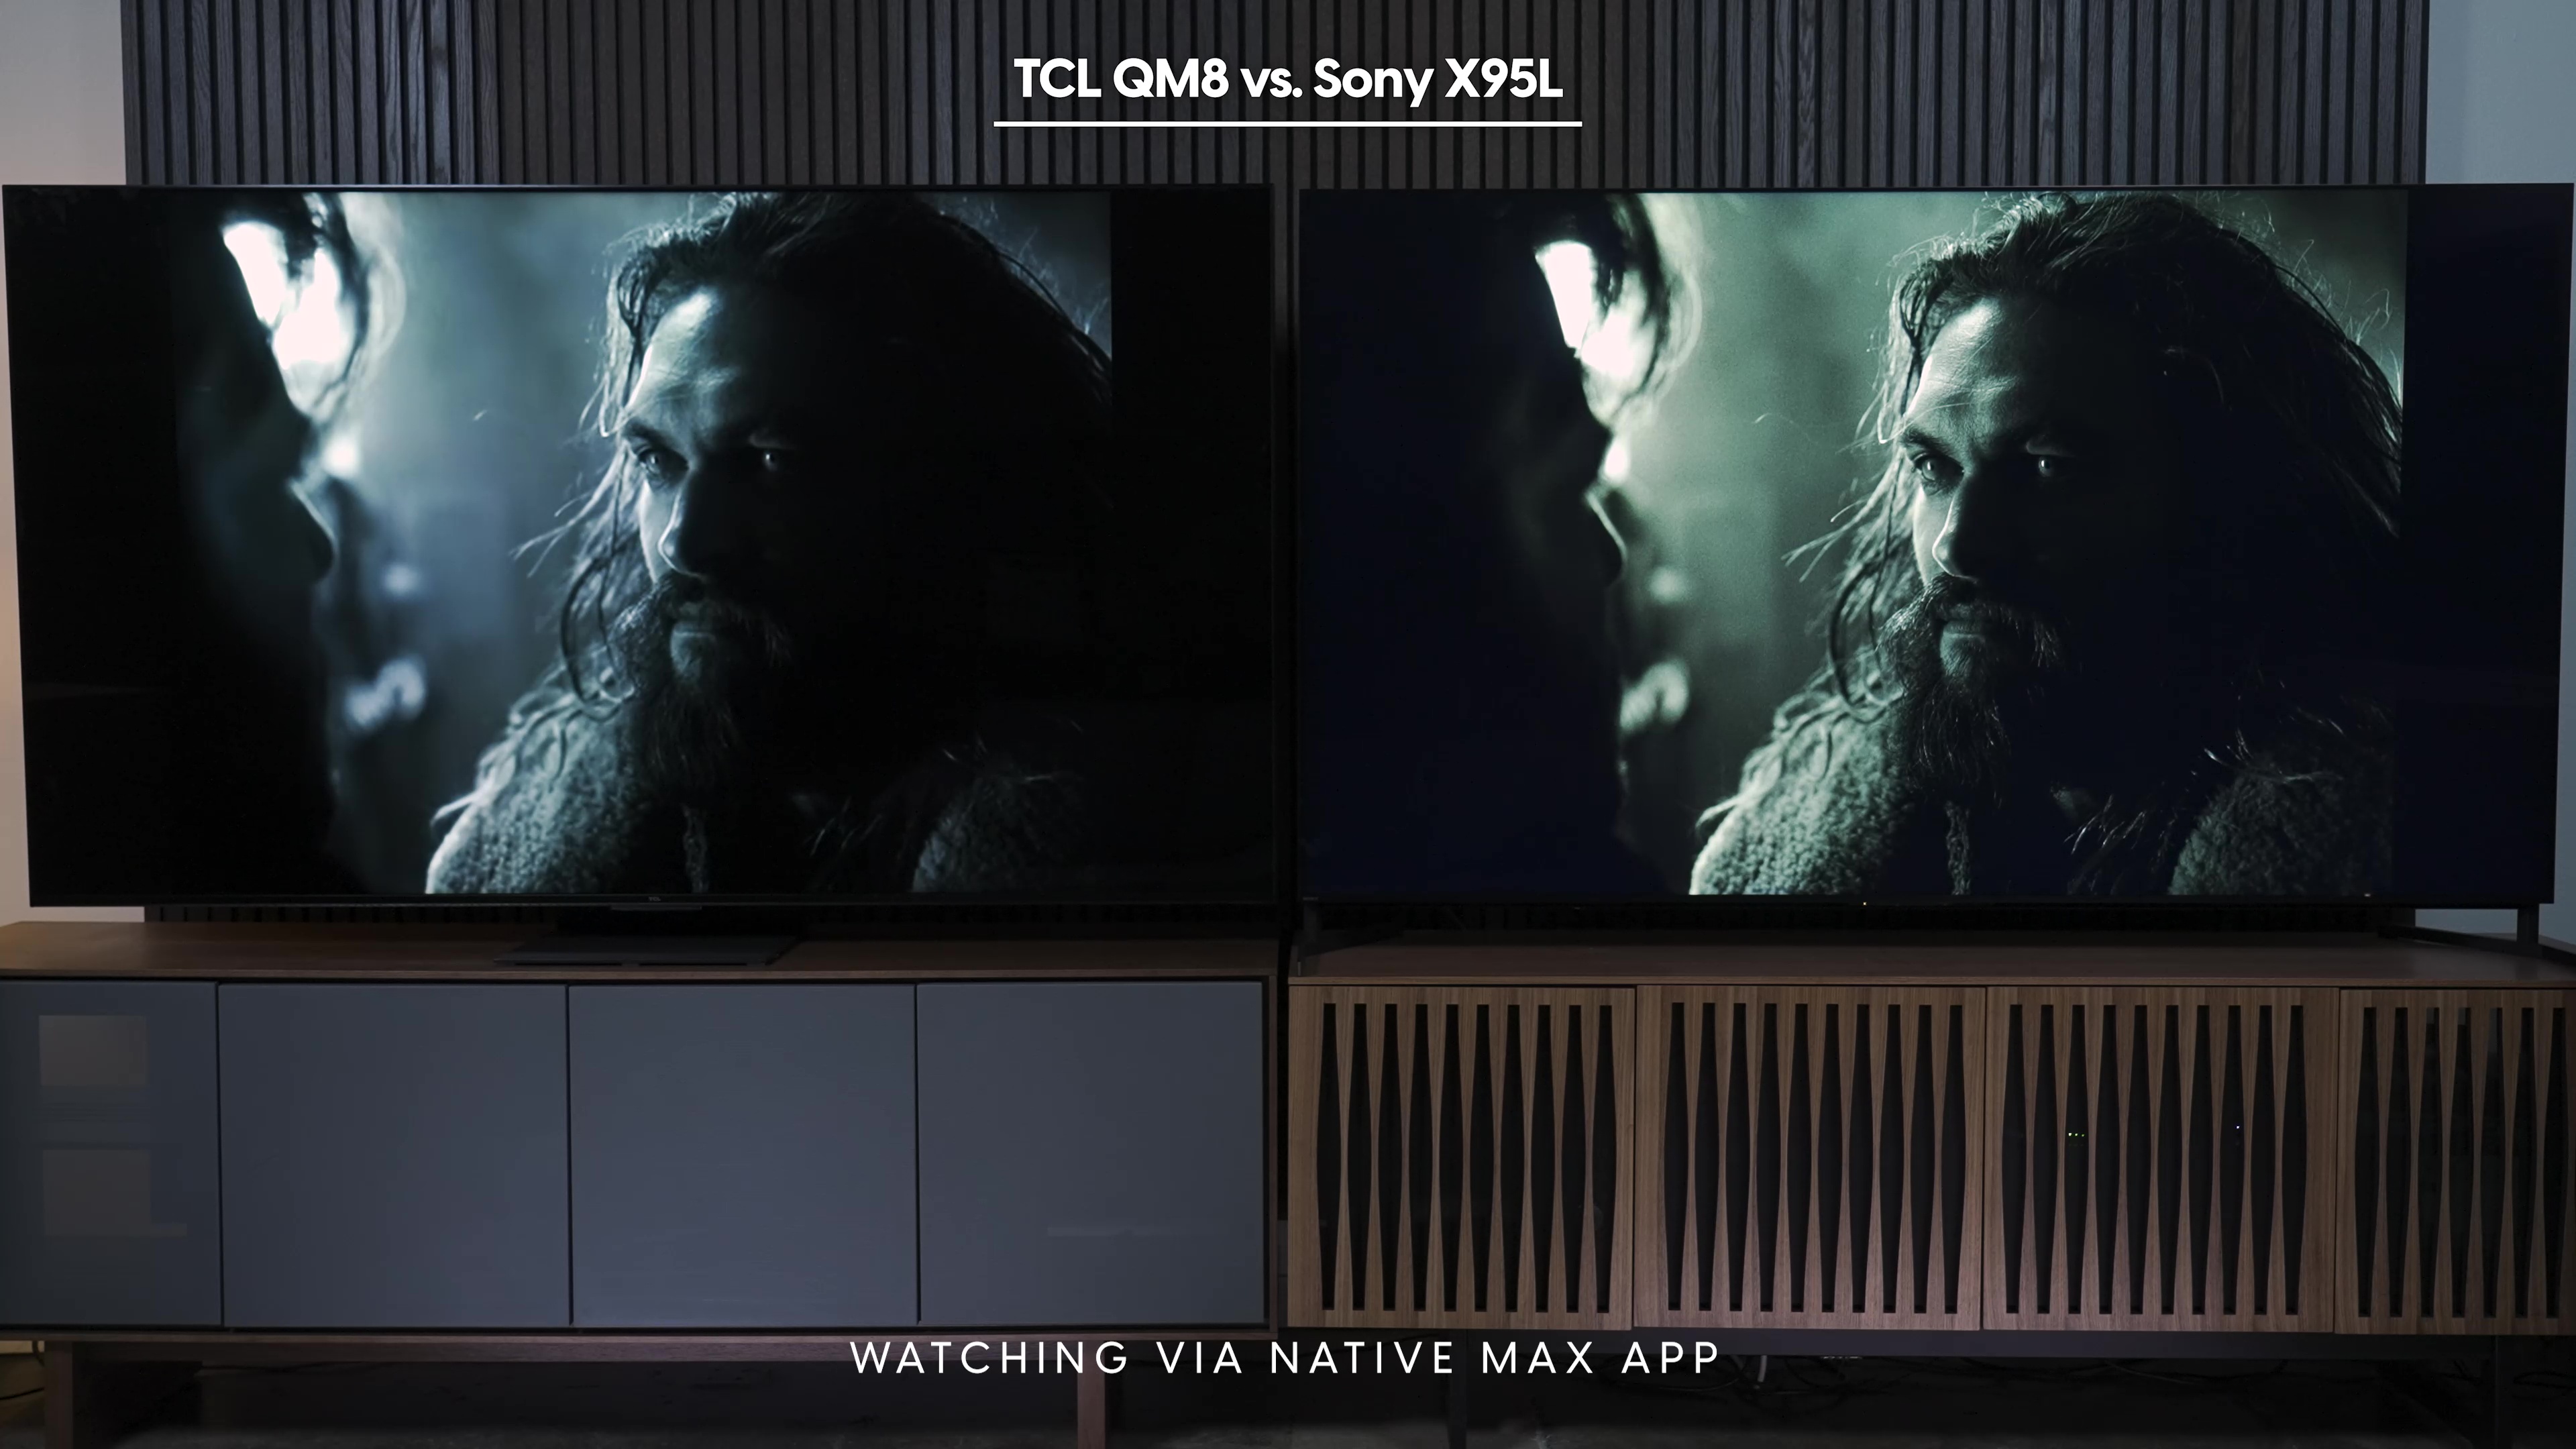 Comparación lado a lado de una captura de pantalla de Justice League como se ve en la aplicación nativa Max en Sony Bravia X95L vs TCL QM8.